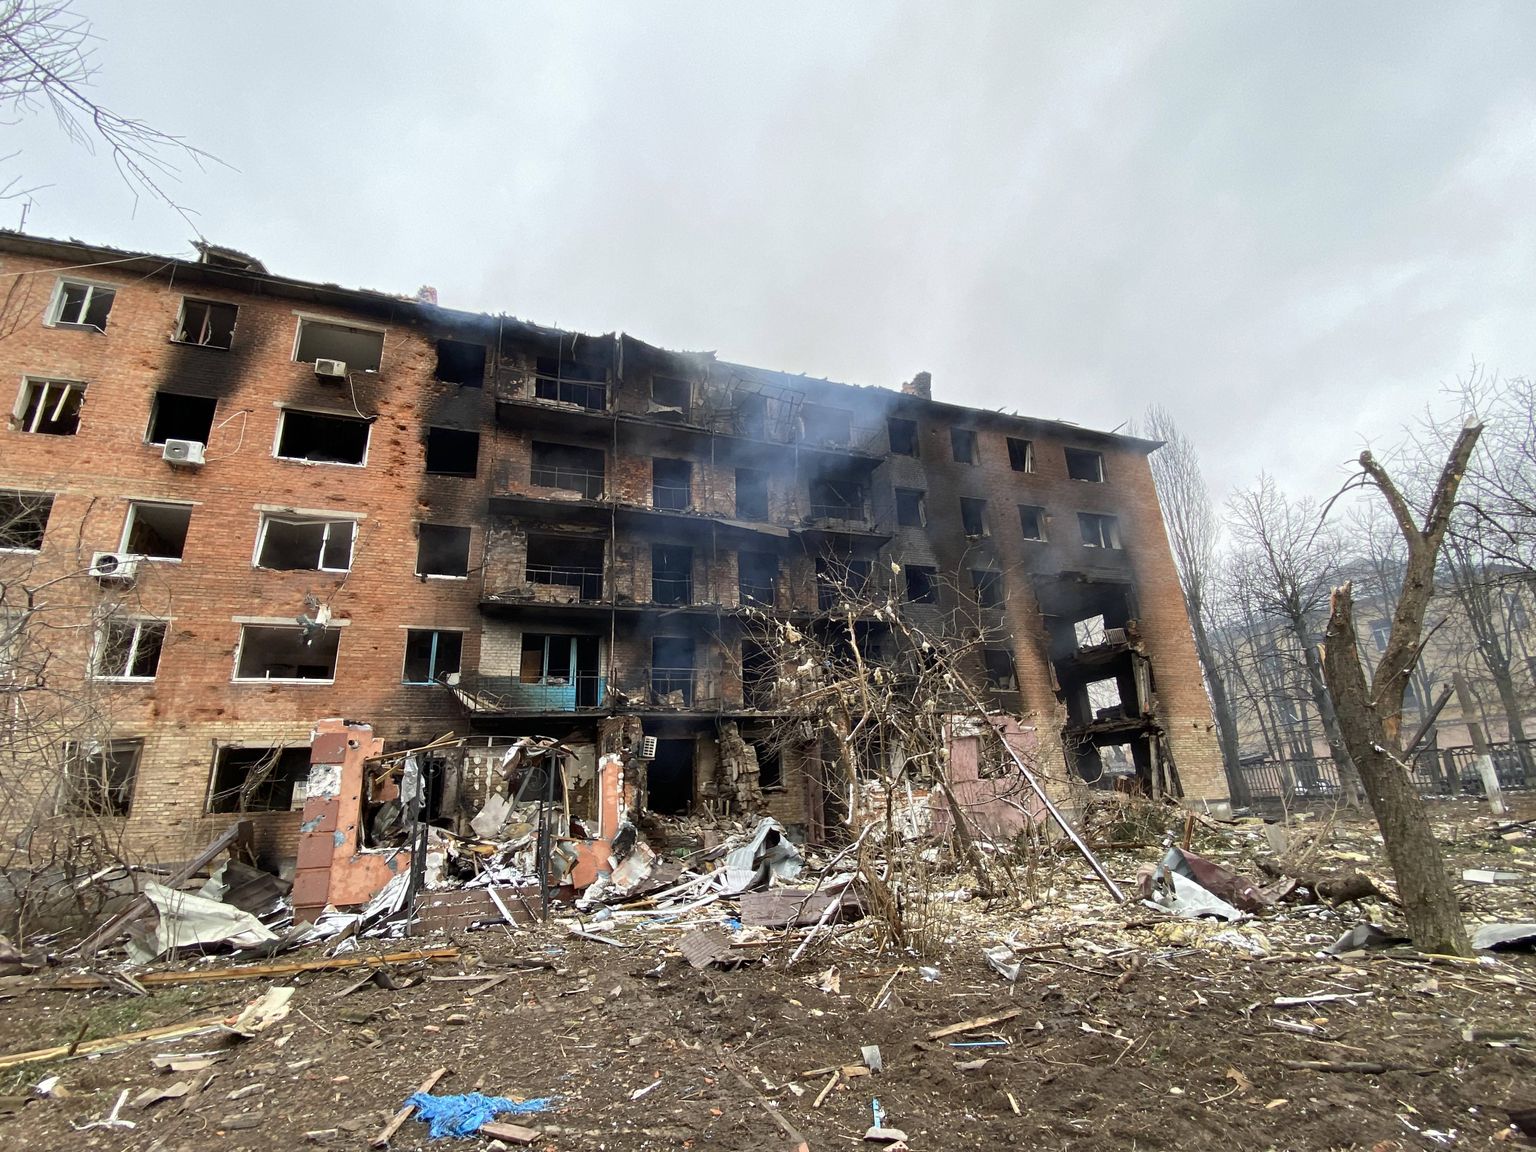 Sõjas purustatud elumaja Kiievi lähedal Ukrainas 2022 märtsis.